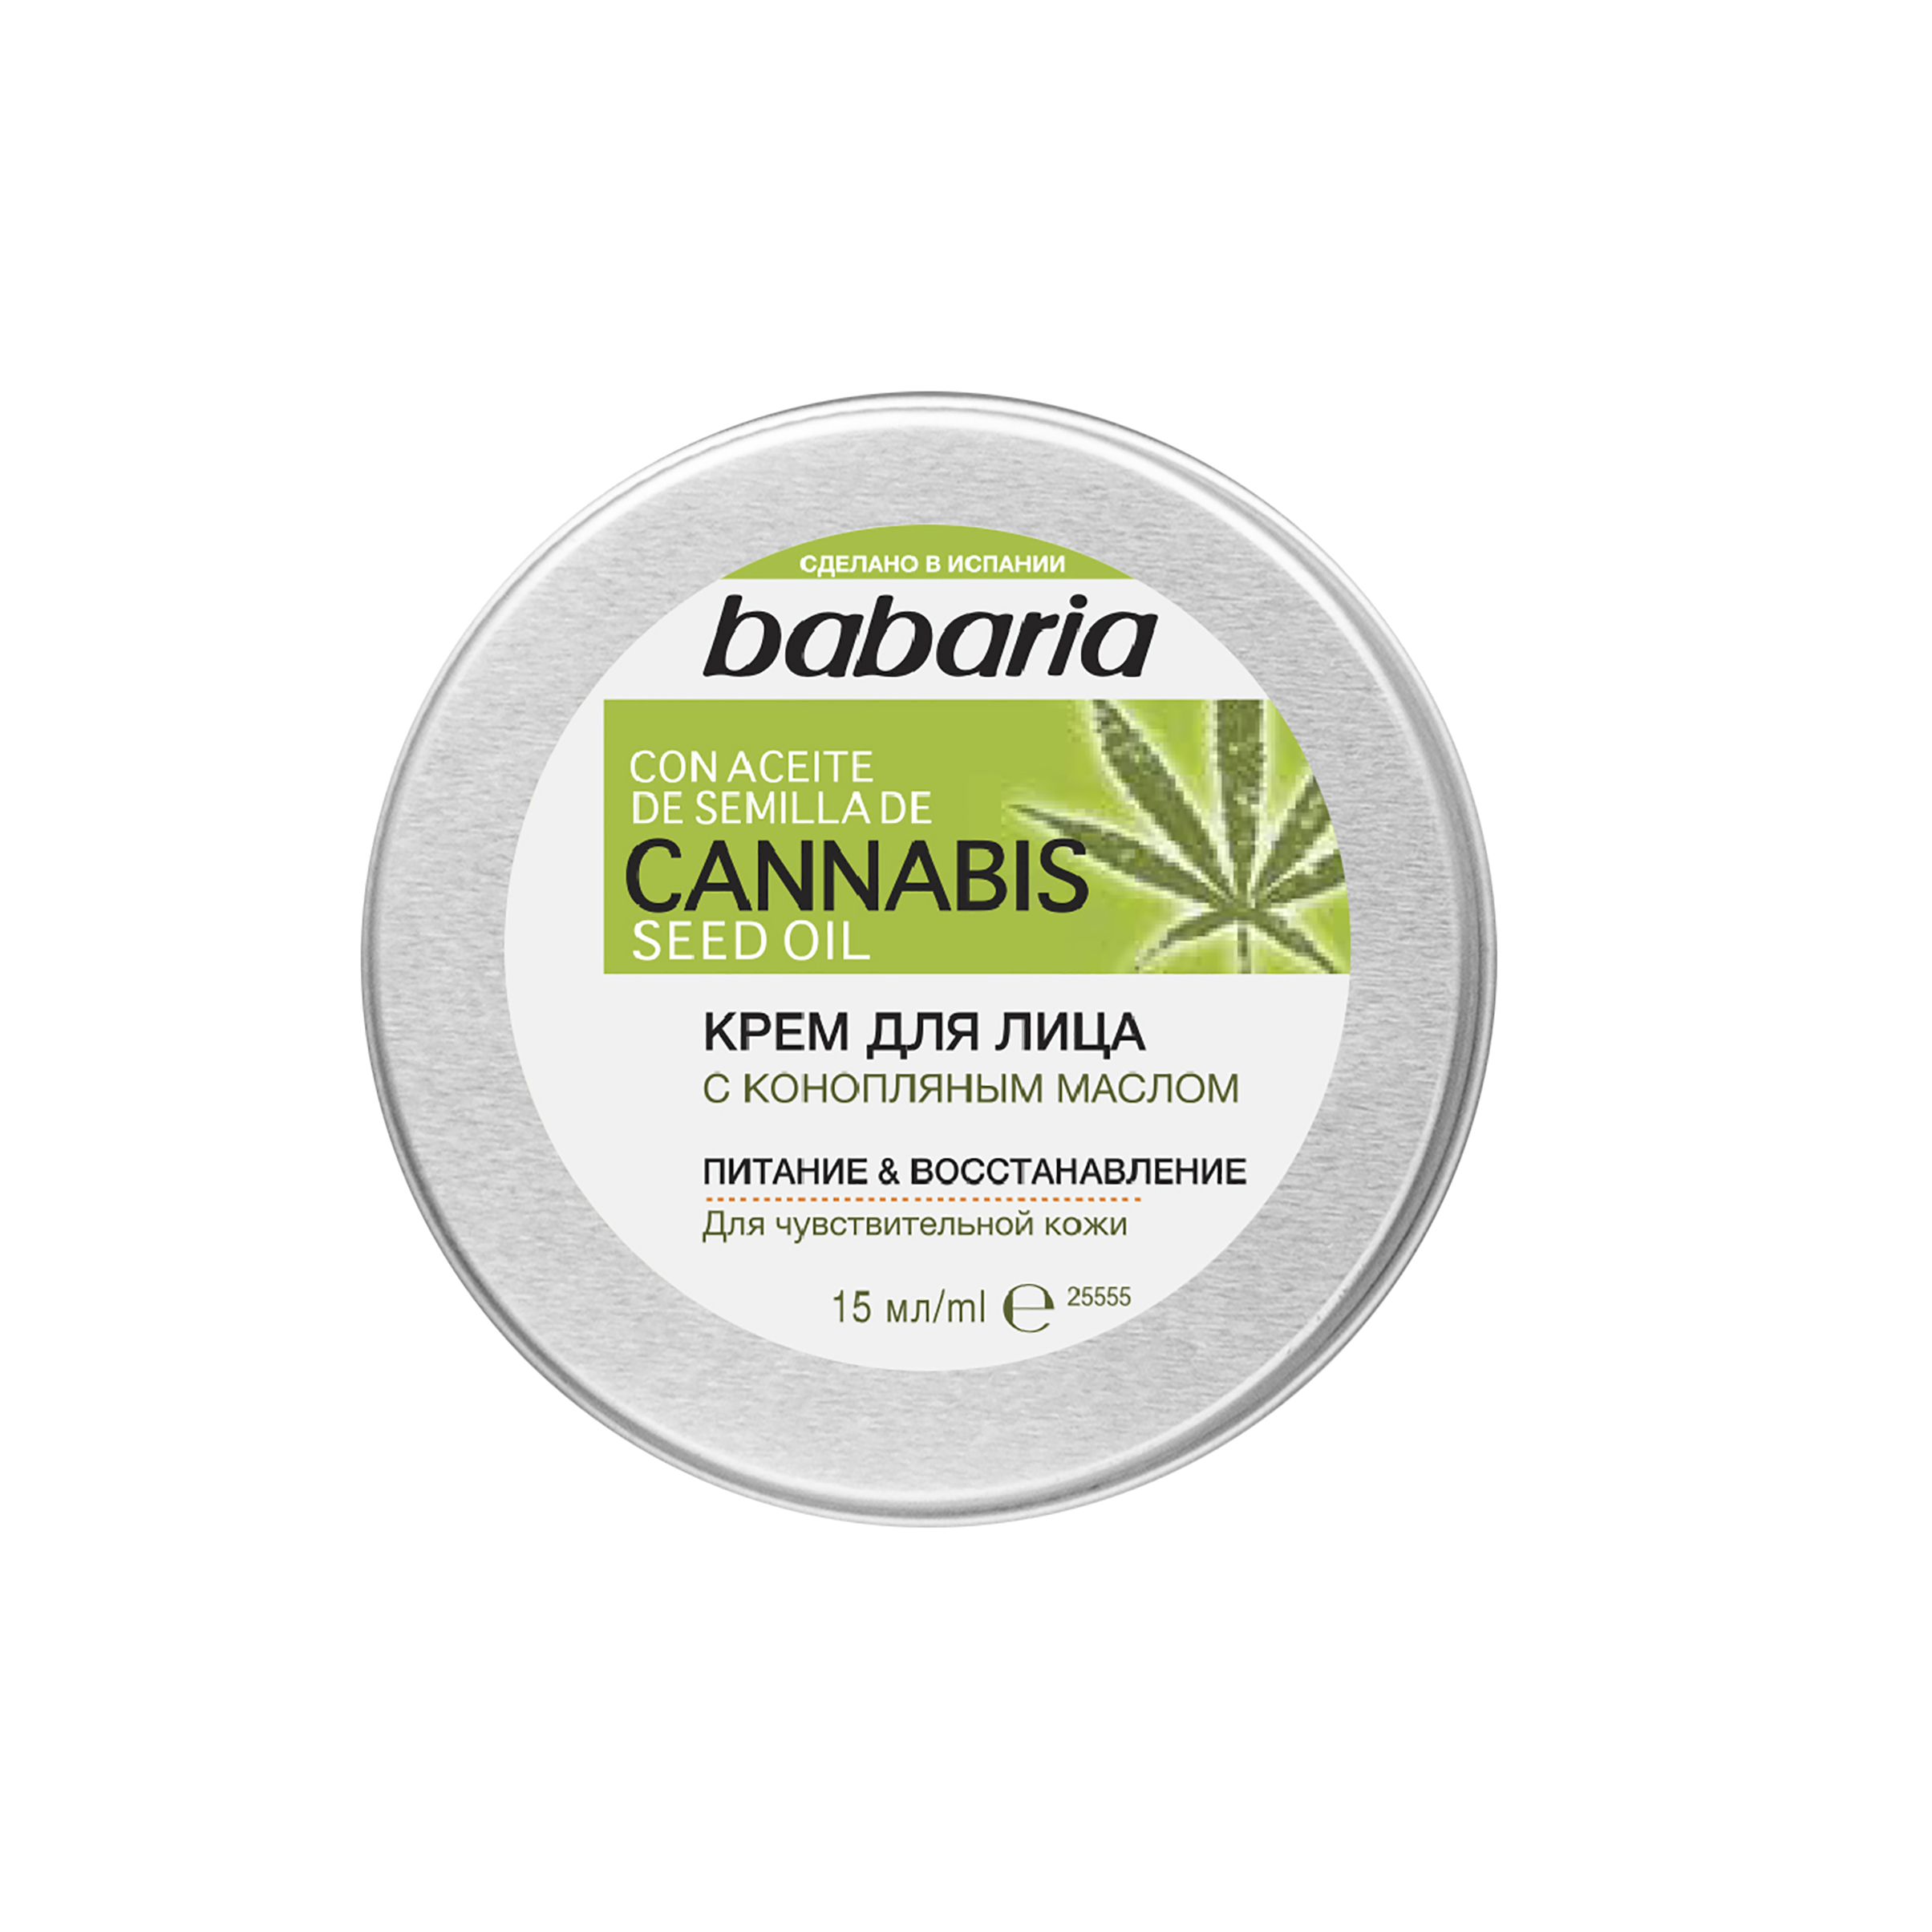 Крем для лица Babaria Cannabis Seed Oil с конопляным маслом, 50 мл крем для ног релакс organic cannabis ecolatier green 100мл